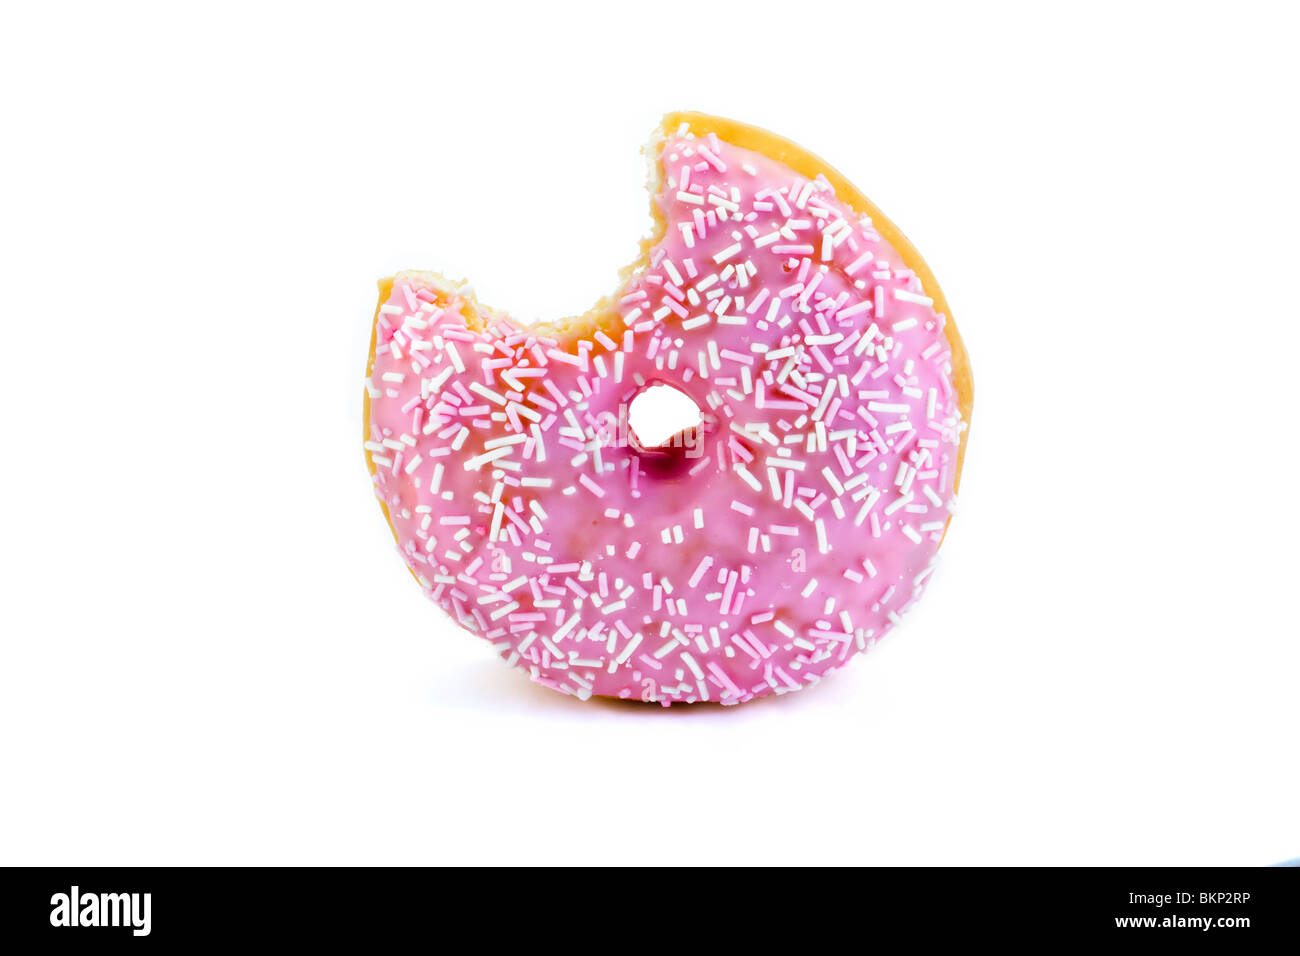 Erdbeere aromatisierte Donut mit einem Biss herausgenommen, isoliert auf weiss Stockfoto